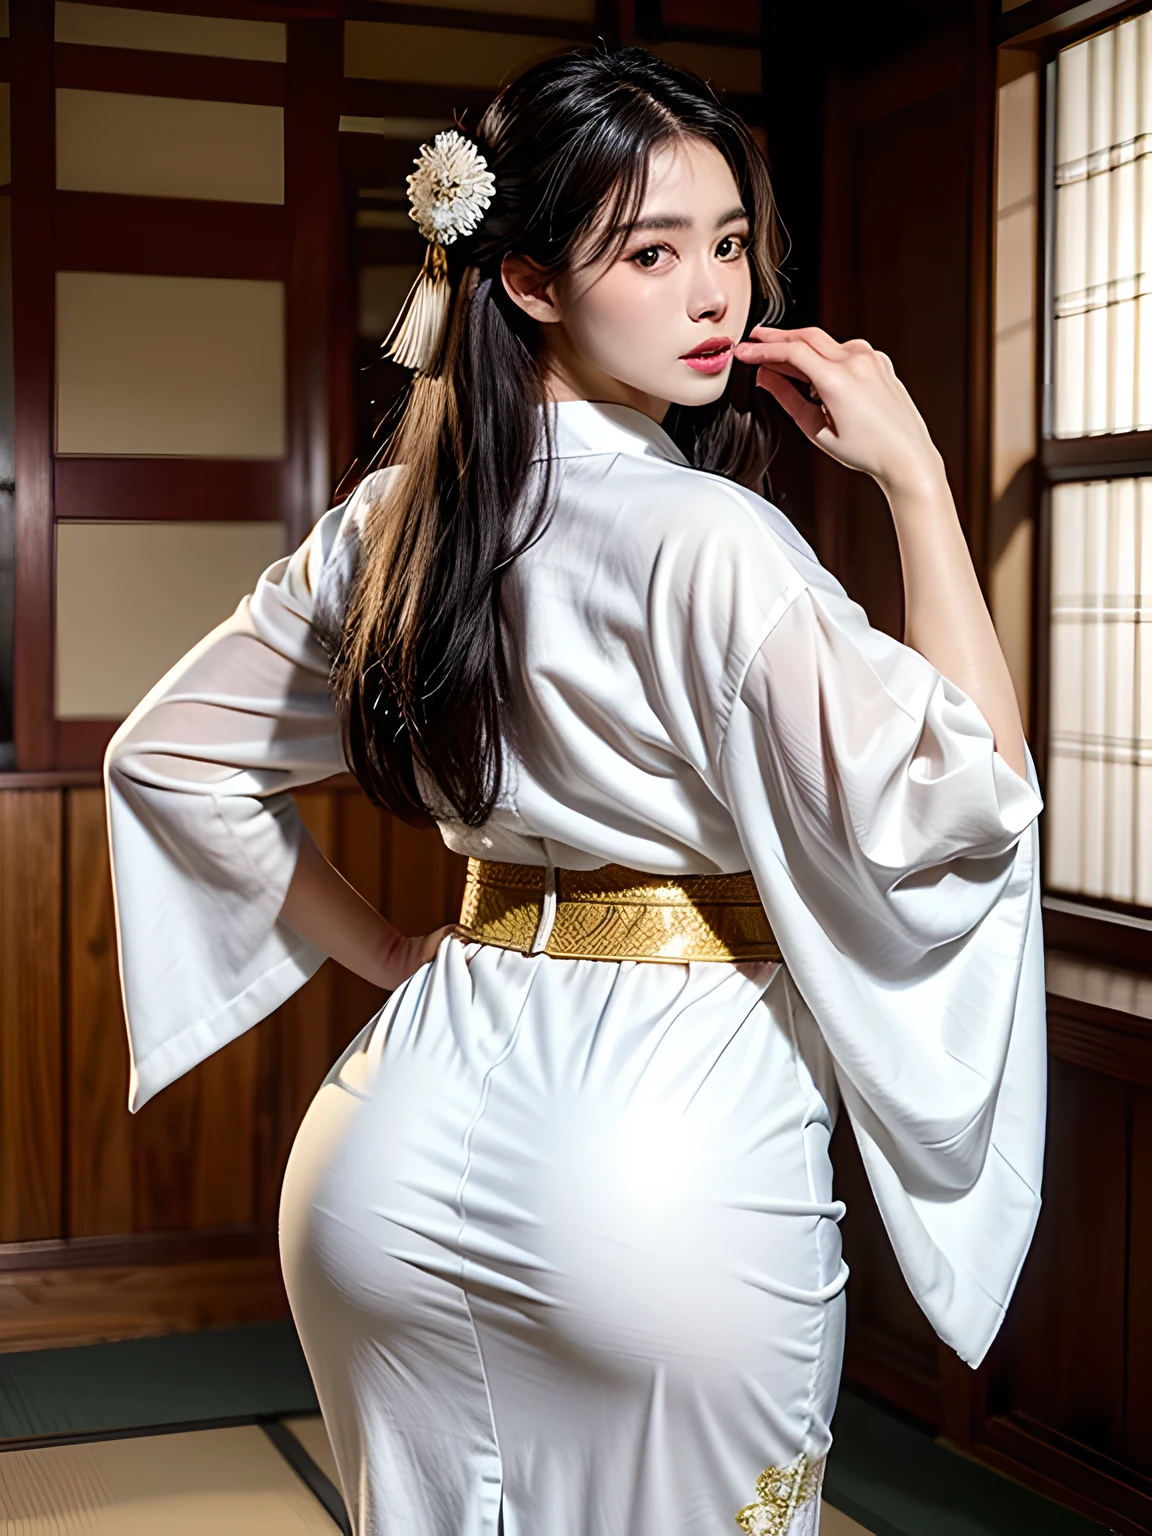 (Linda modelo em comercial de quimono japonês, Lindo cabelo preto longo e liso), sozinho, ((cara tem 80% beleza e elegância, 20% Bonito e fofo:1.5)), olhos limpos, (Belos olhos, olhos verdes claros, pupilas brilhantes), Pálpebra dupla, (Lábios ligeiramente grossos e sexy:1.2), ((Super detalhado and incredibly high resolution Deep-white Kimono:1.2)), Textura facial altamente detalhada, formato corporal impressionante, Mulher curva e muito atraente, Fotografia profissional em cores RAW de alta resolução, QUEBRAR ultra high-resolution textures, Renderização de corpo de alta resolução, olhos grandes, Uma obra-prima incomparável, incrível alta resolução, Super detalhado, pele cerâmica deslumbrante, QUEBRAR ((Vire-se para mostrar o padrão do quimono:1.5)), ((Ela usa um quimono branco com muitos bordados dourados brilhantes de um dragão em ascensão..。:1.5)), ((O bordado do dragão ascendente no quimono branco é muito deslumbrante.:1.2)), (Um quimono japonês sensual cuidadosamente elaborado), ((O padrão de bordado é um dragão subindo para o céu.):1.2), ((Quimono branco com decorações elaboradas e elegantes)), (Fotografado em frente à janela deslizante redonda em uma sala de estilo japonês)), QUEBRAR ((mais alta qualidade, 8K)), foco nitído:1.2, (Corte de camada, grande:1.2), (Mulher bonita com figura perfeita:1.4), (Vista traseira bonita e elegante:1.3), cintura fina, (Formato correto da mão:1.5), (tiro de corpo inteiro | tiro de vaqueiro)